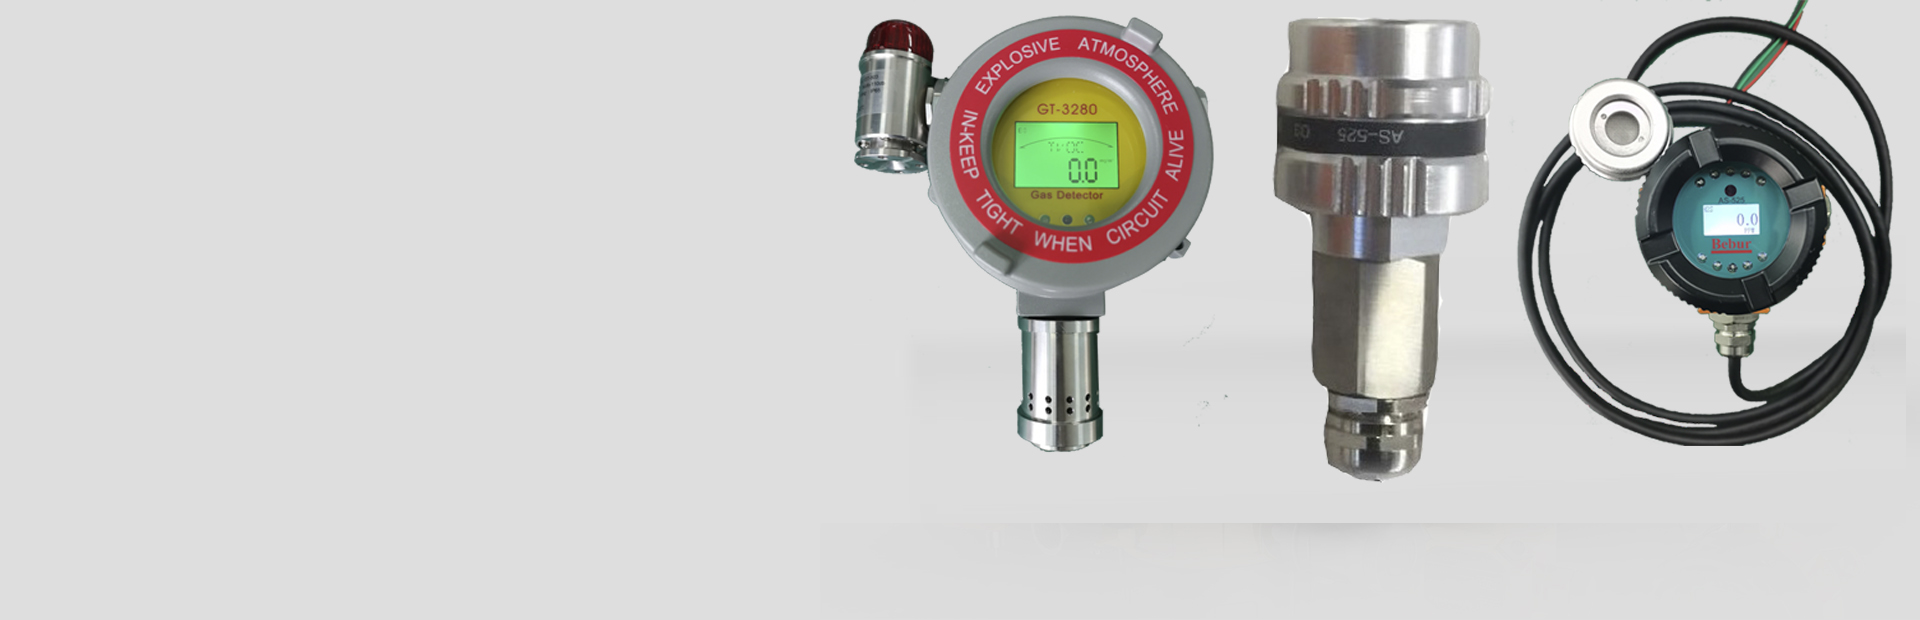 臭氧水质测定仪系列产品